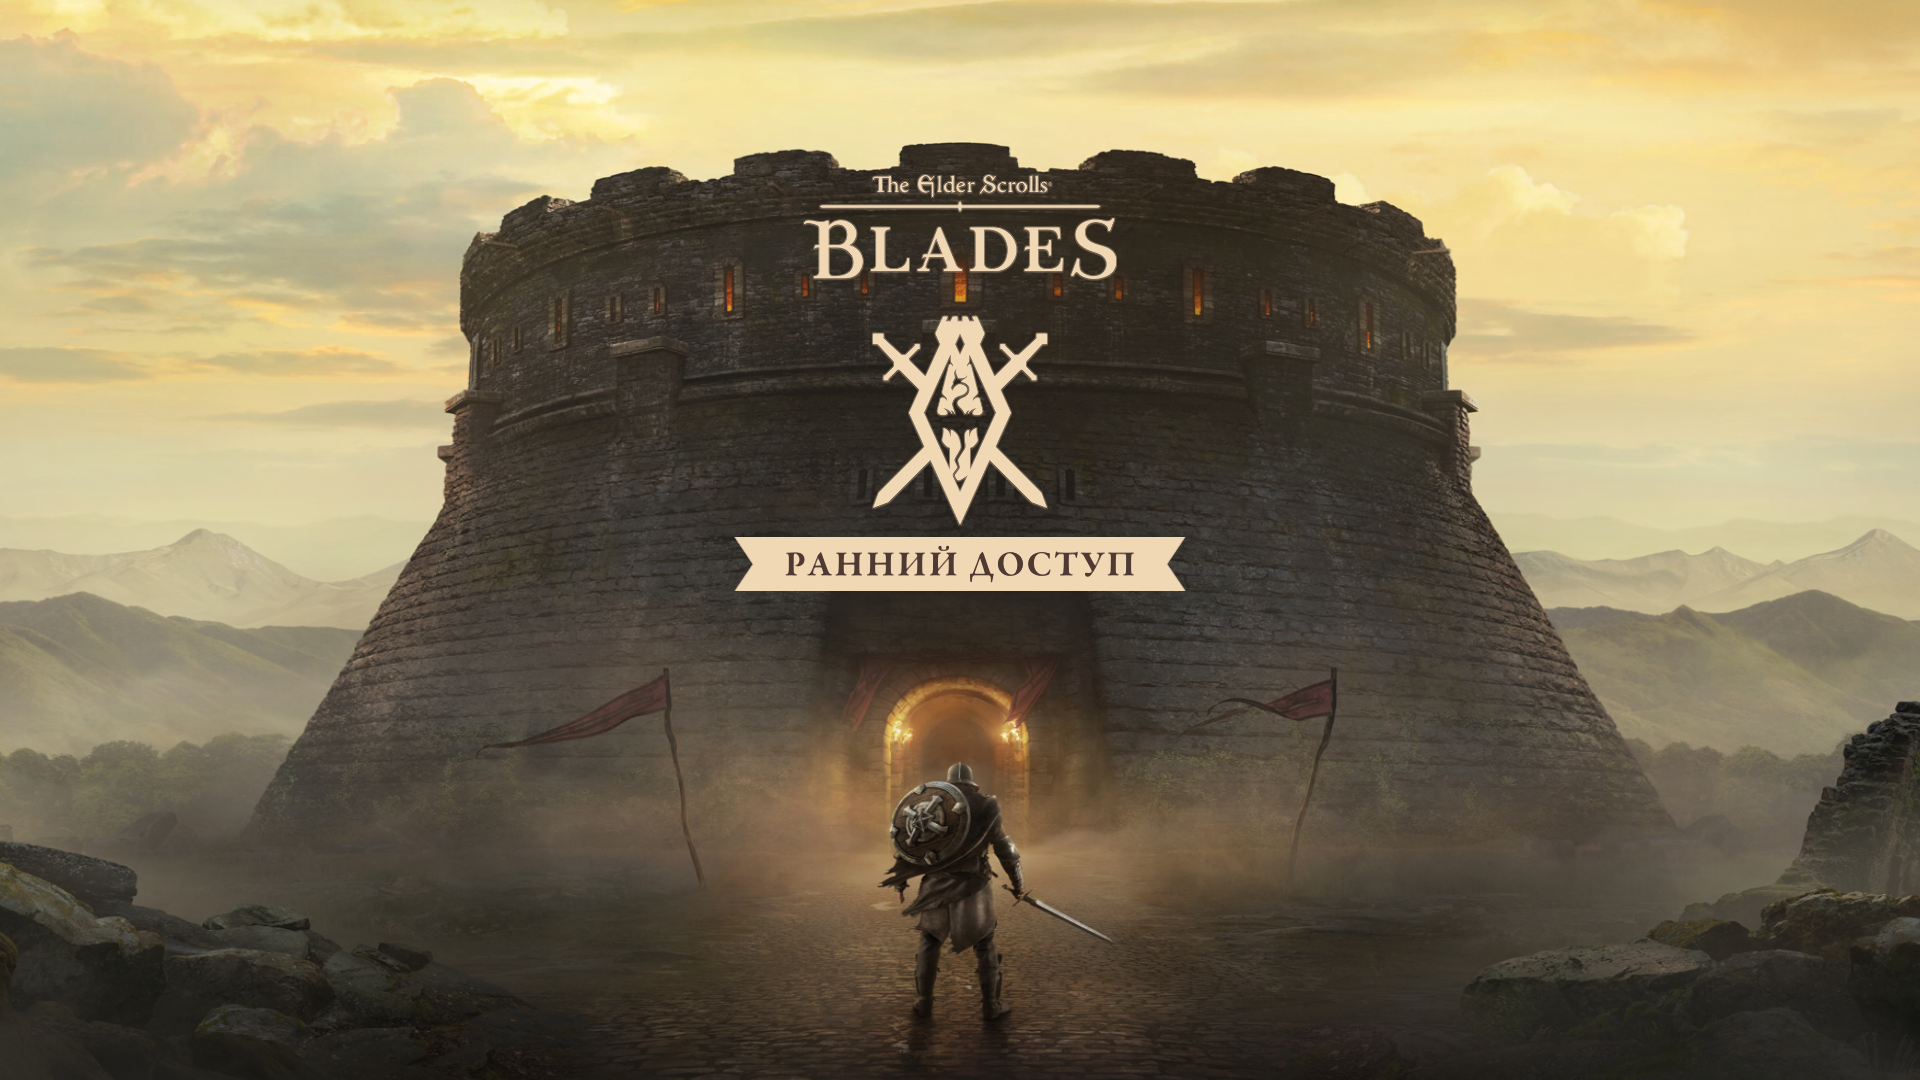 Wejście dla wszystkich! The Elder Scrolls: Blades wyszedł z zamkniętej bety dla Androida i iOS